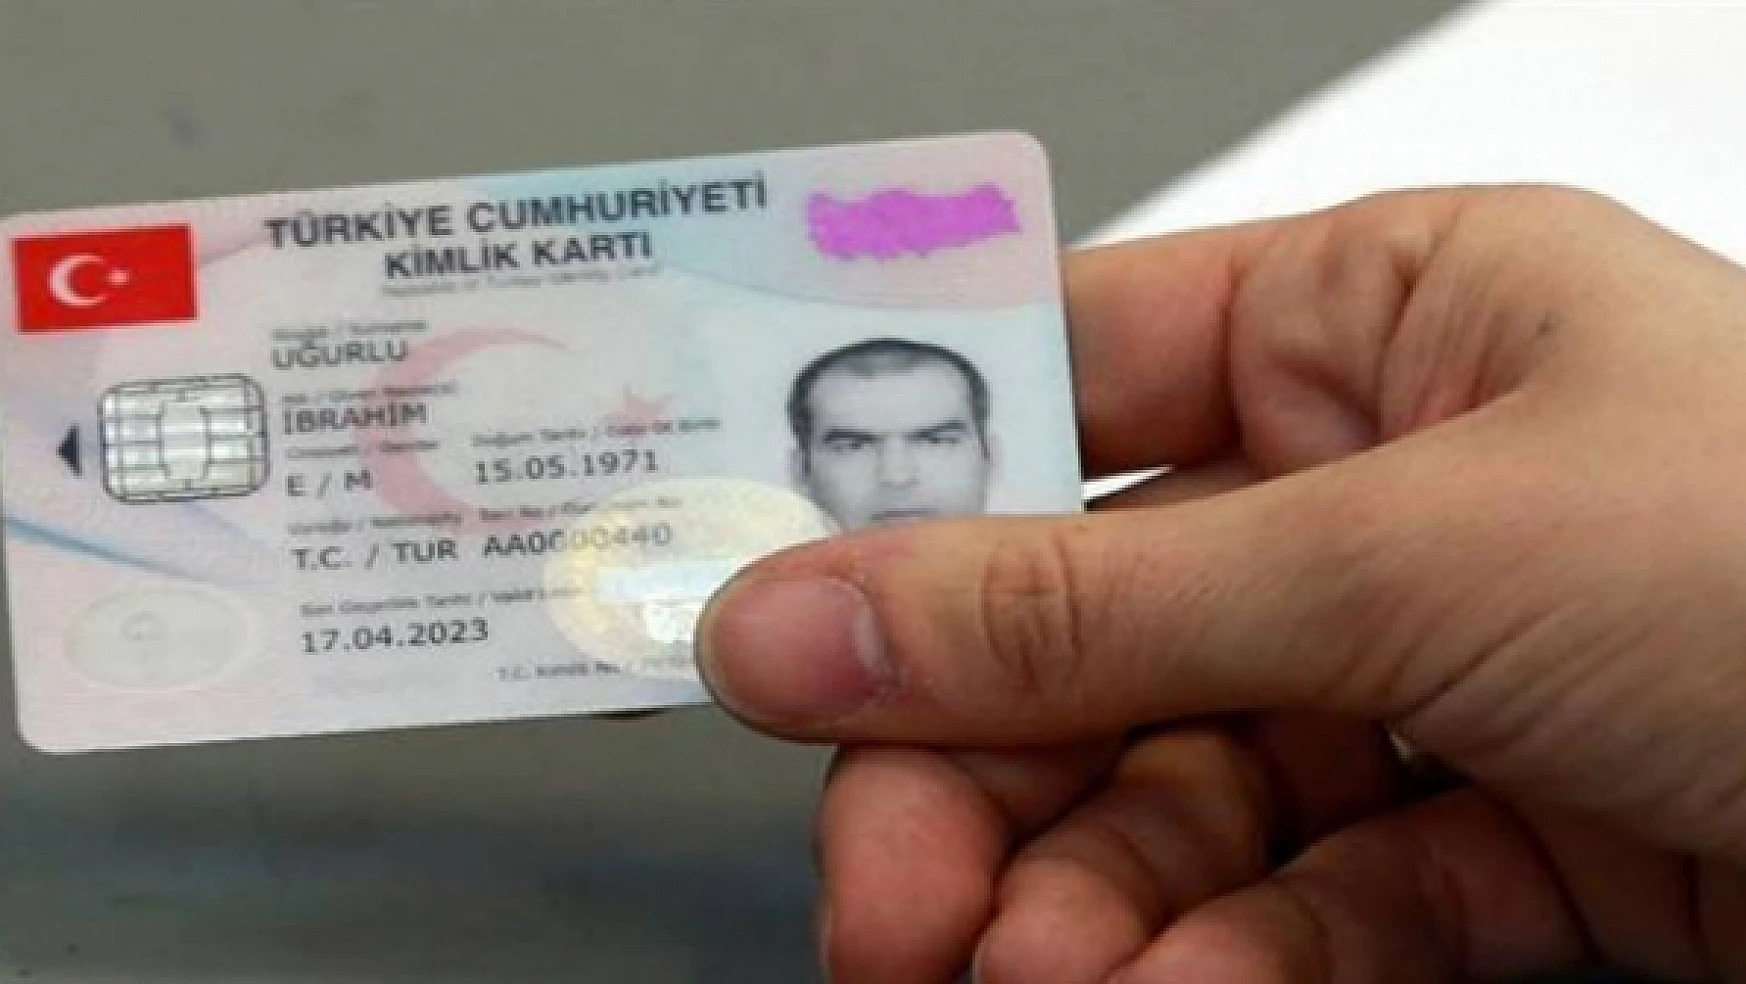 Çipli kimlikler pasaport yerine de kullanılabilecek